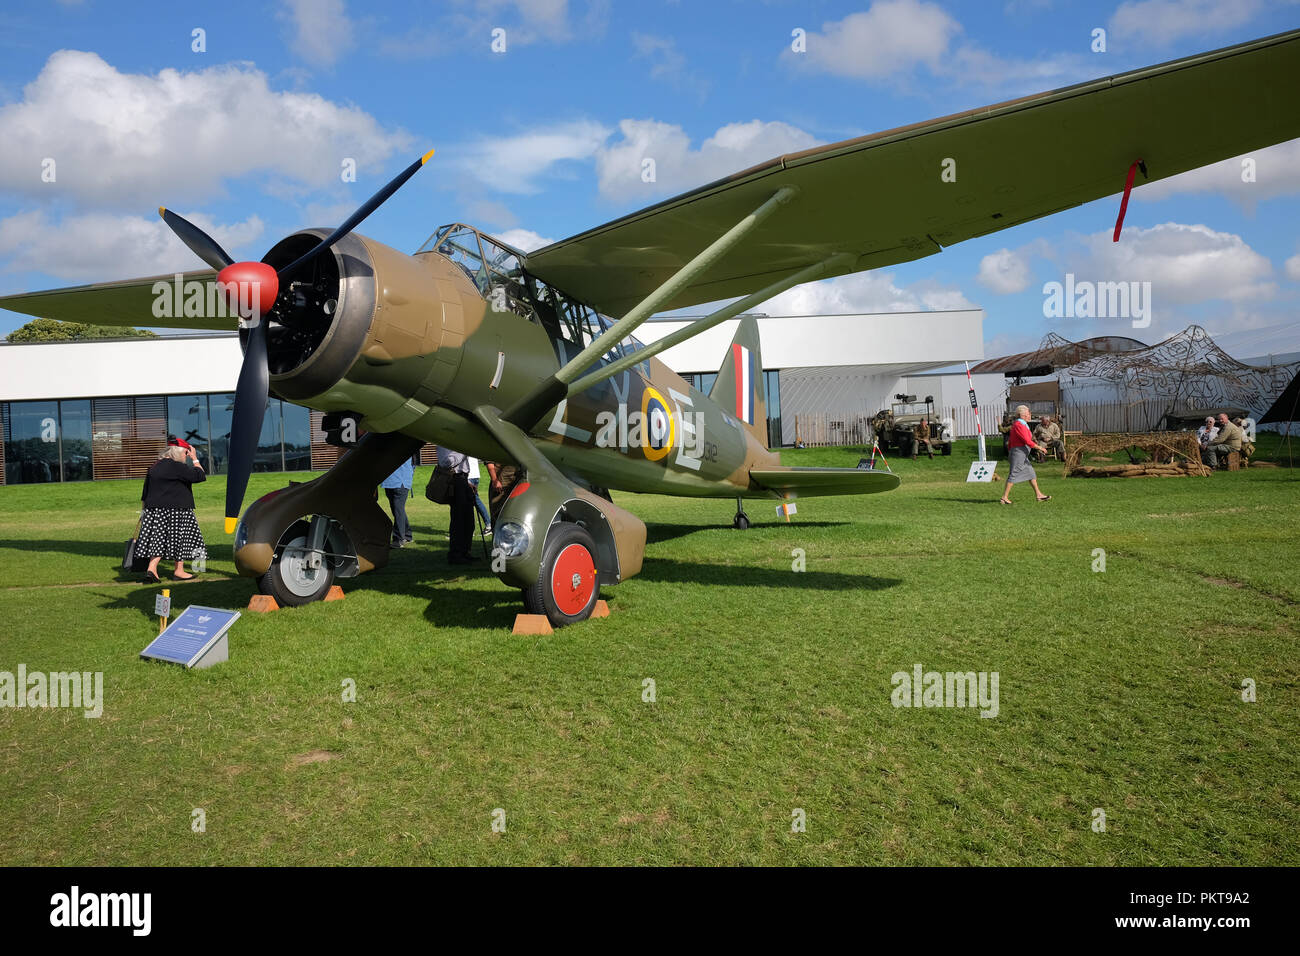 September 2018 - Westland Lysander Flugzeuge für das Fallenlassen Spione in Frankreich während des Zweiten Weltkriegs am Goodwood Revival Wochenende verwendet Stockfoto